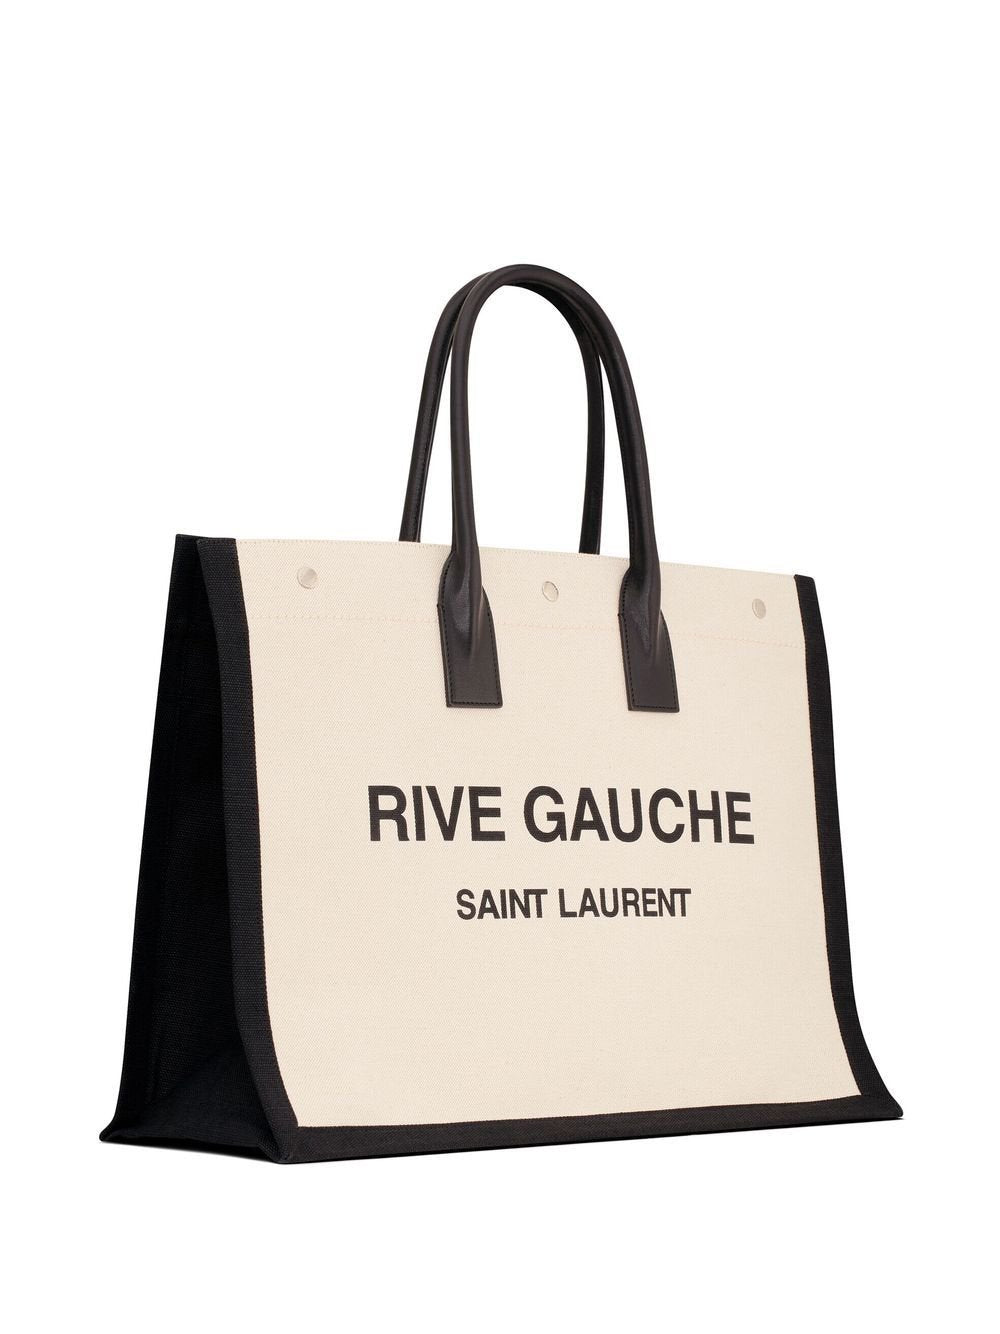 Saint Laurent Sac cabas beige Rive Gauche - Lothaire